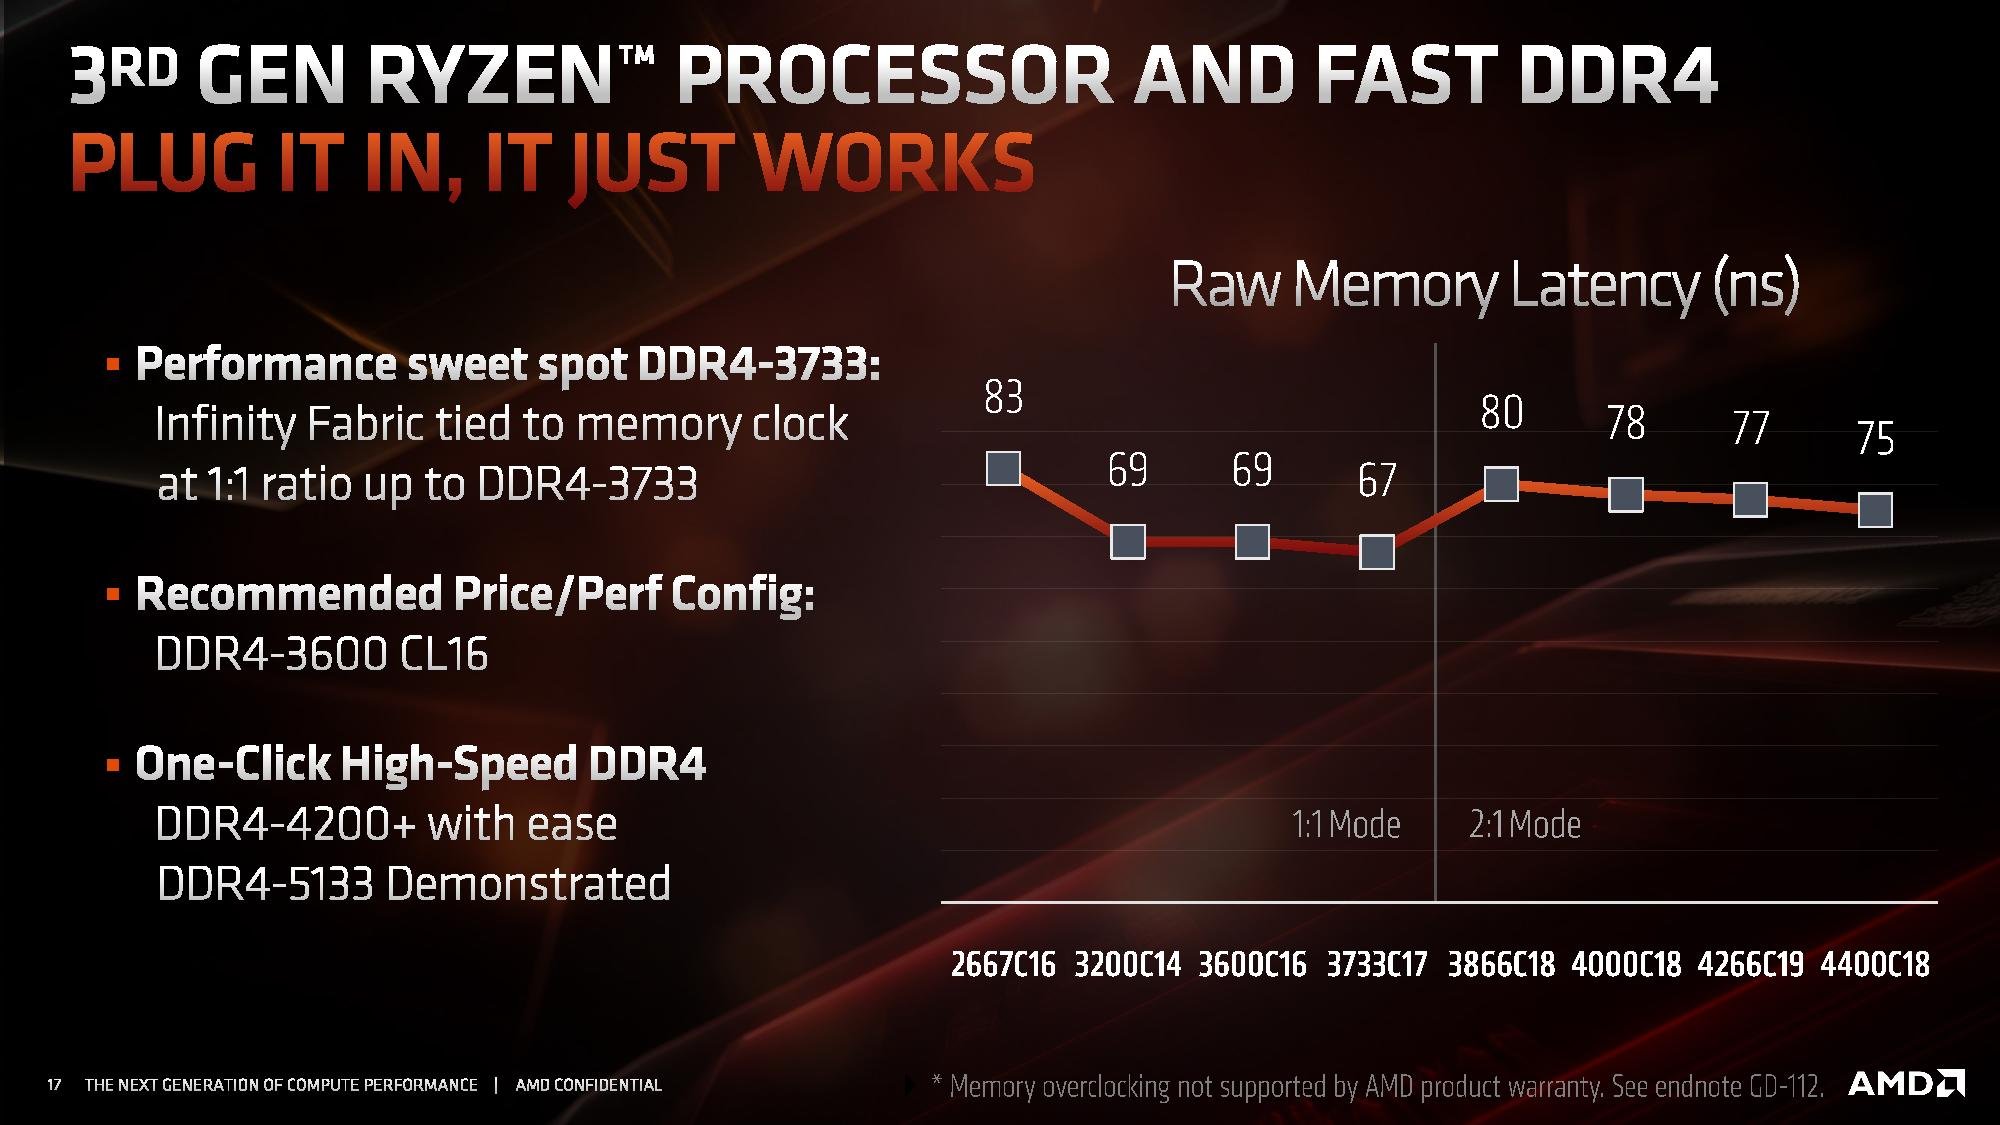 3rd Gen Ryzen and RAM latency